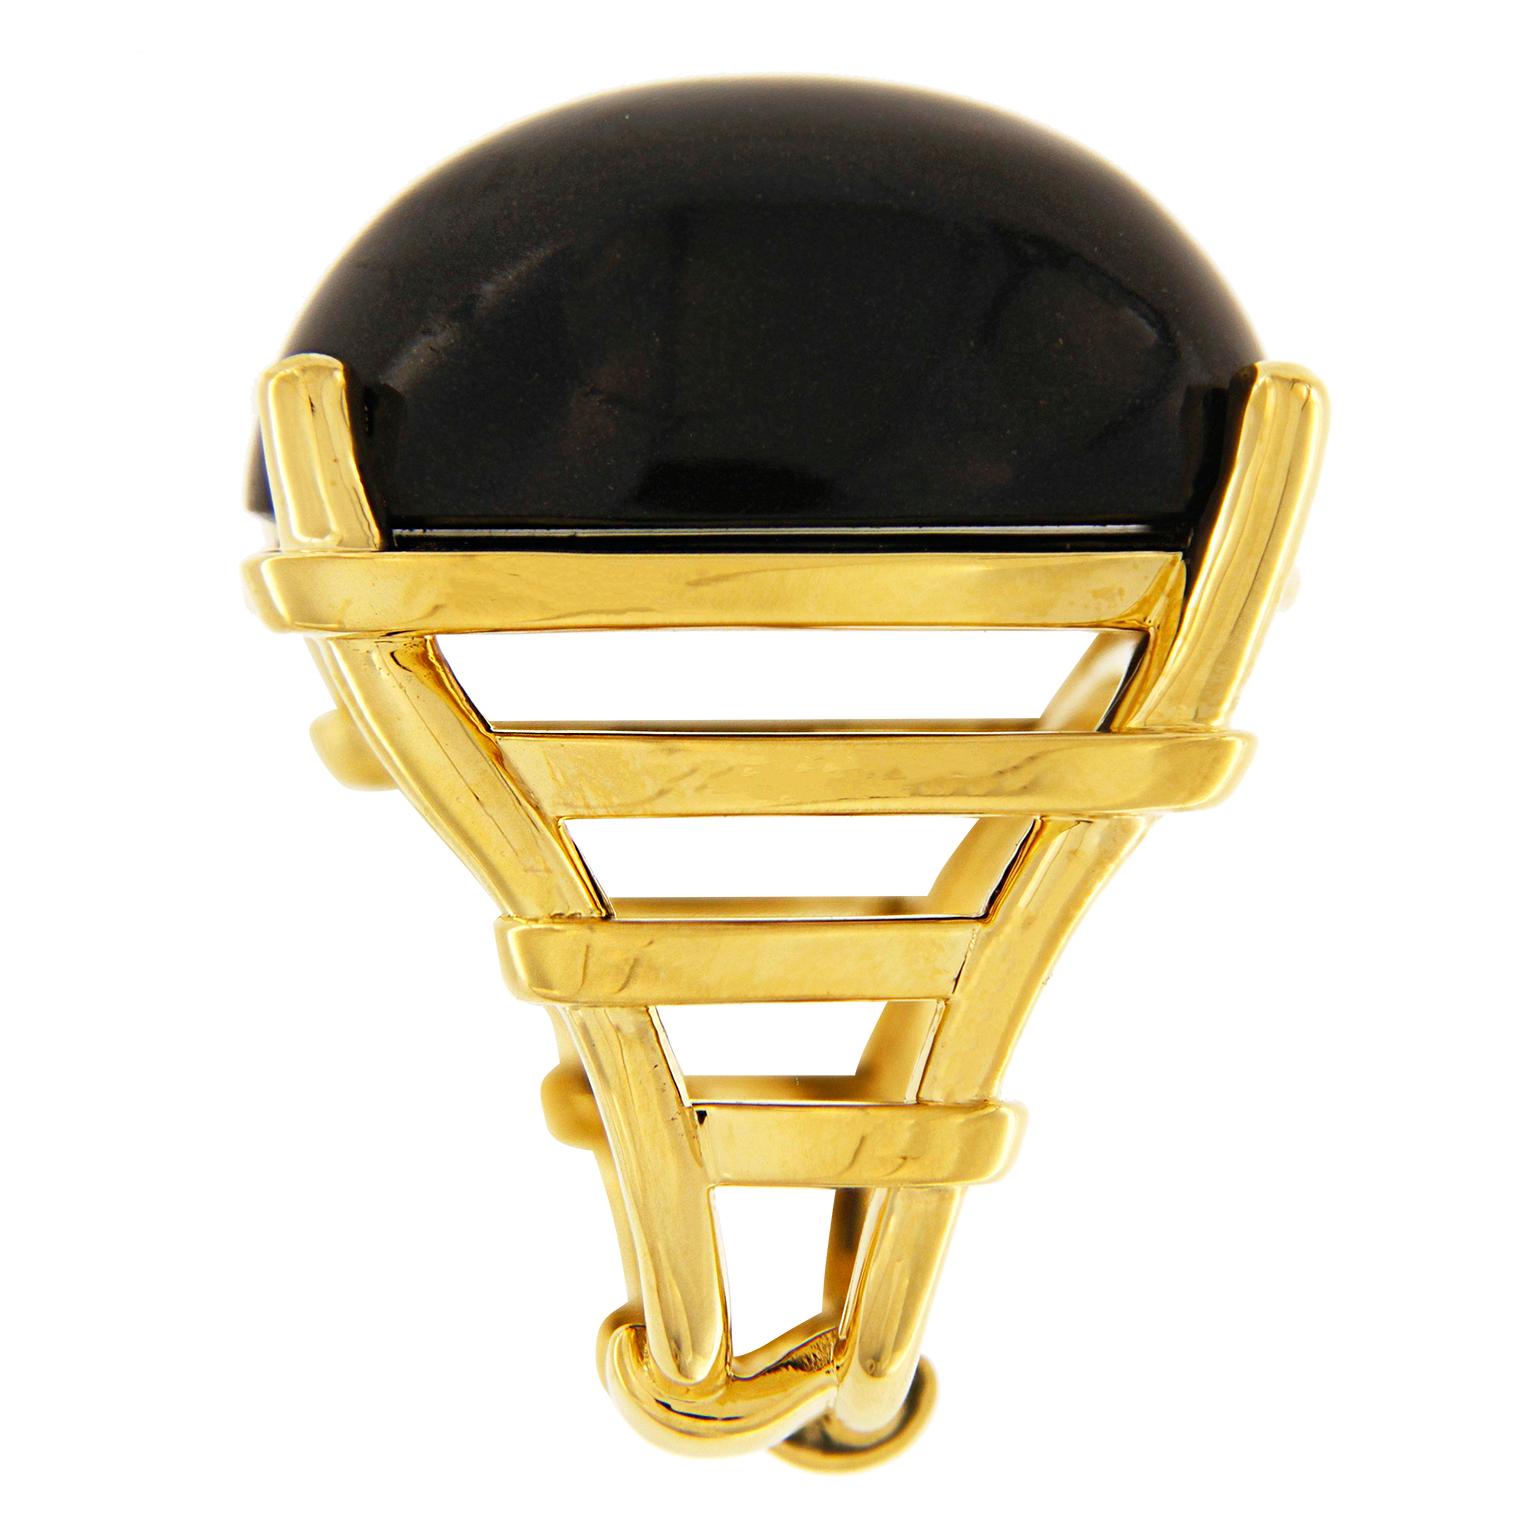 El anillo enrejado Valentin Magro con cabujón ovalado de jade negro combina oscuridad y brillo. La piedra destacada tiene forma de cabujón ovalado y está pulida para resaltar su tono negro. Está engastado entre garras de oro amarillo de 18 quilates.